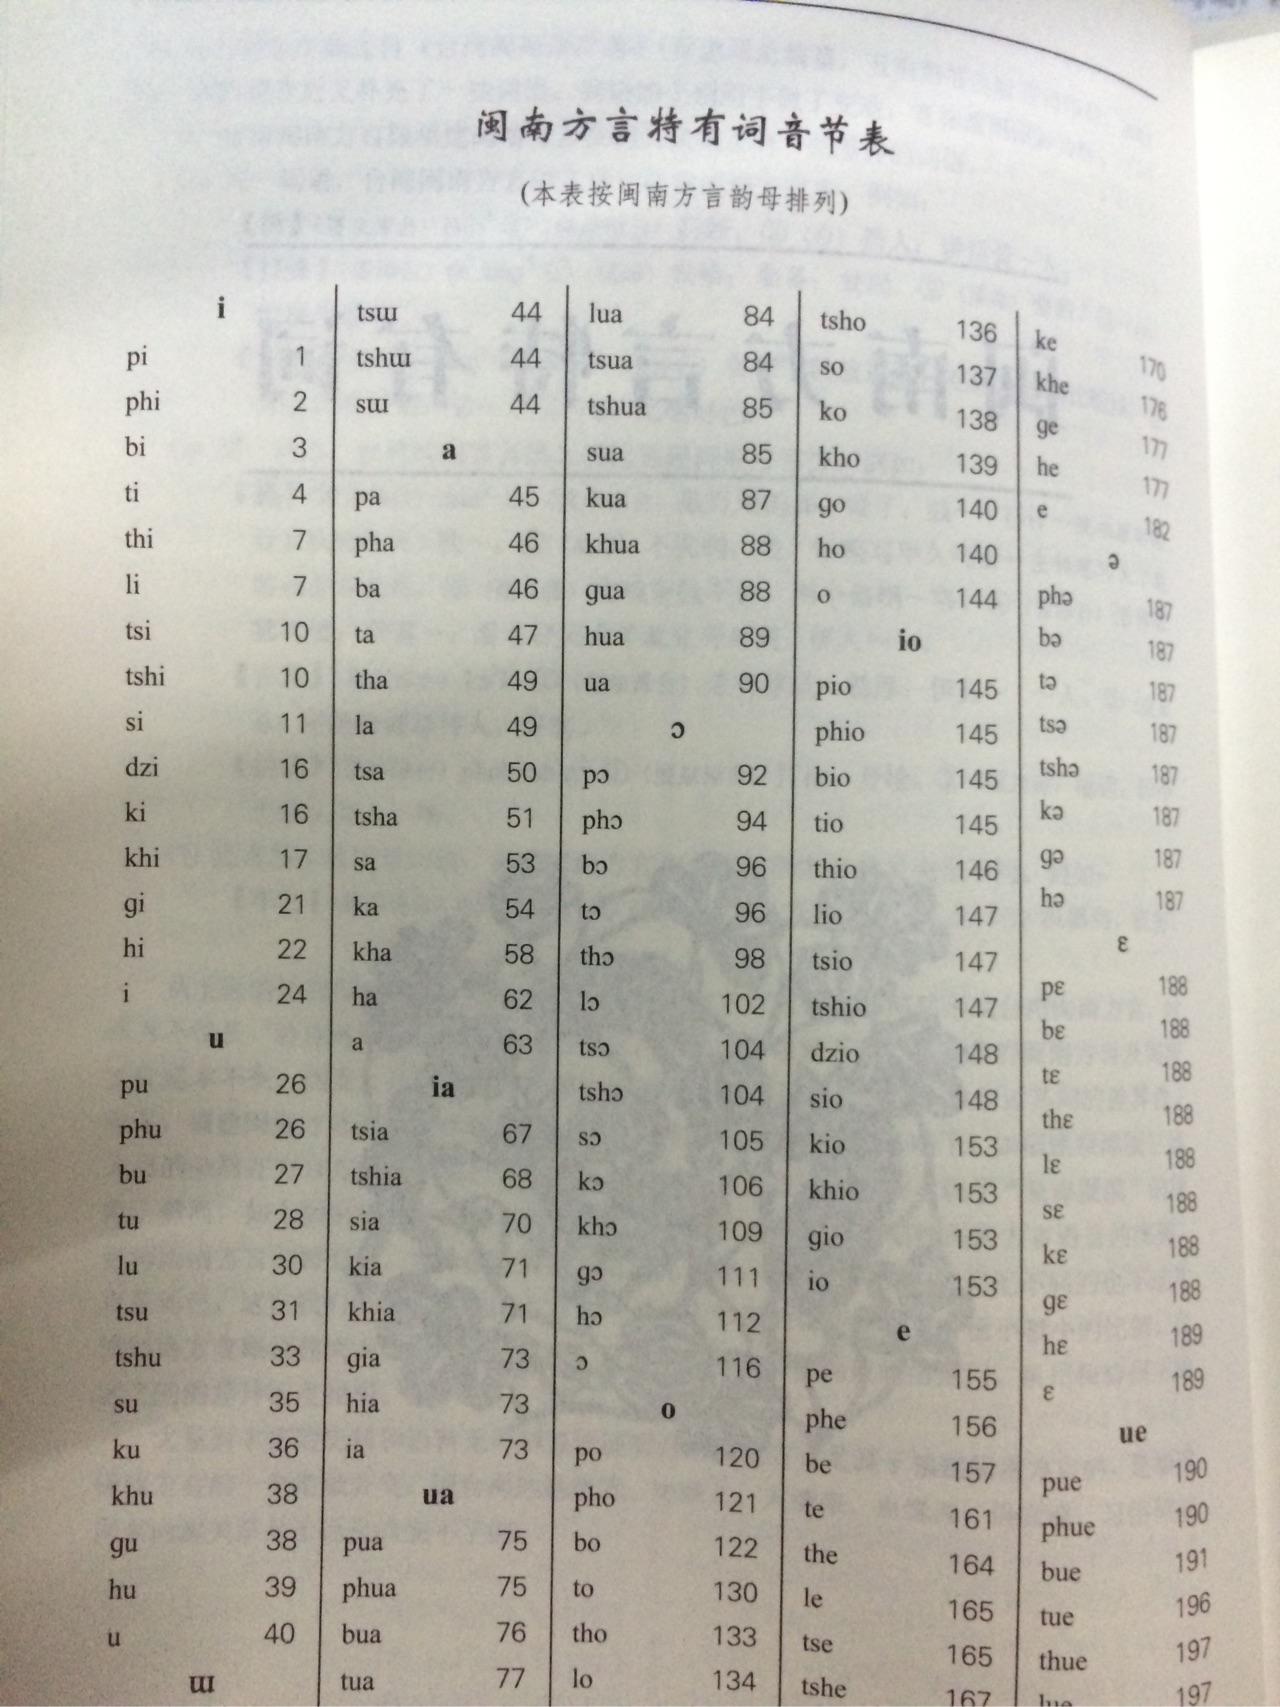 有以汉语拼音的韵母顺序排序的字典吗?